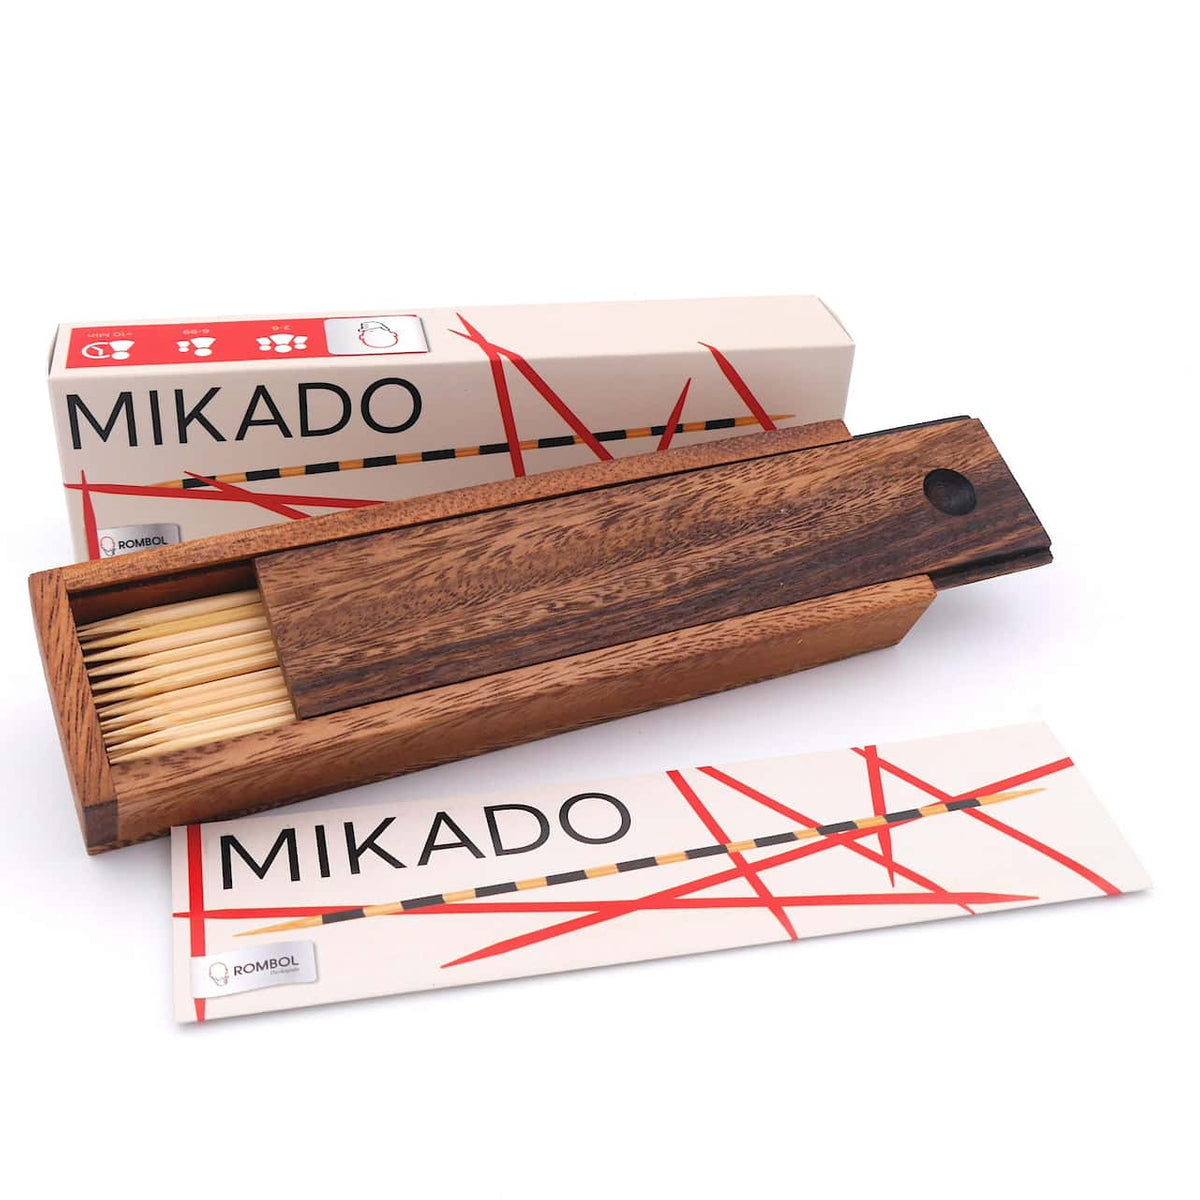 Eine Aufnahme von oben auf ein Mikado-Spiel, bei dem die Stäbchen in einem lockeren Stapel liegen und sich überlappen.